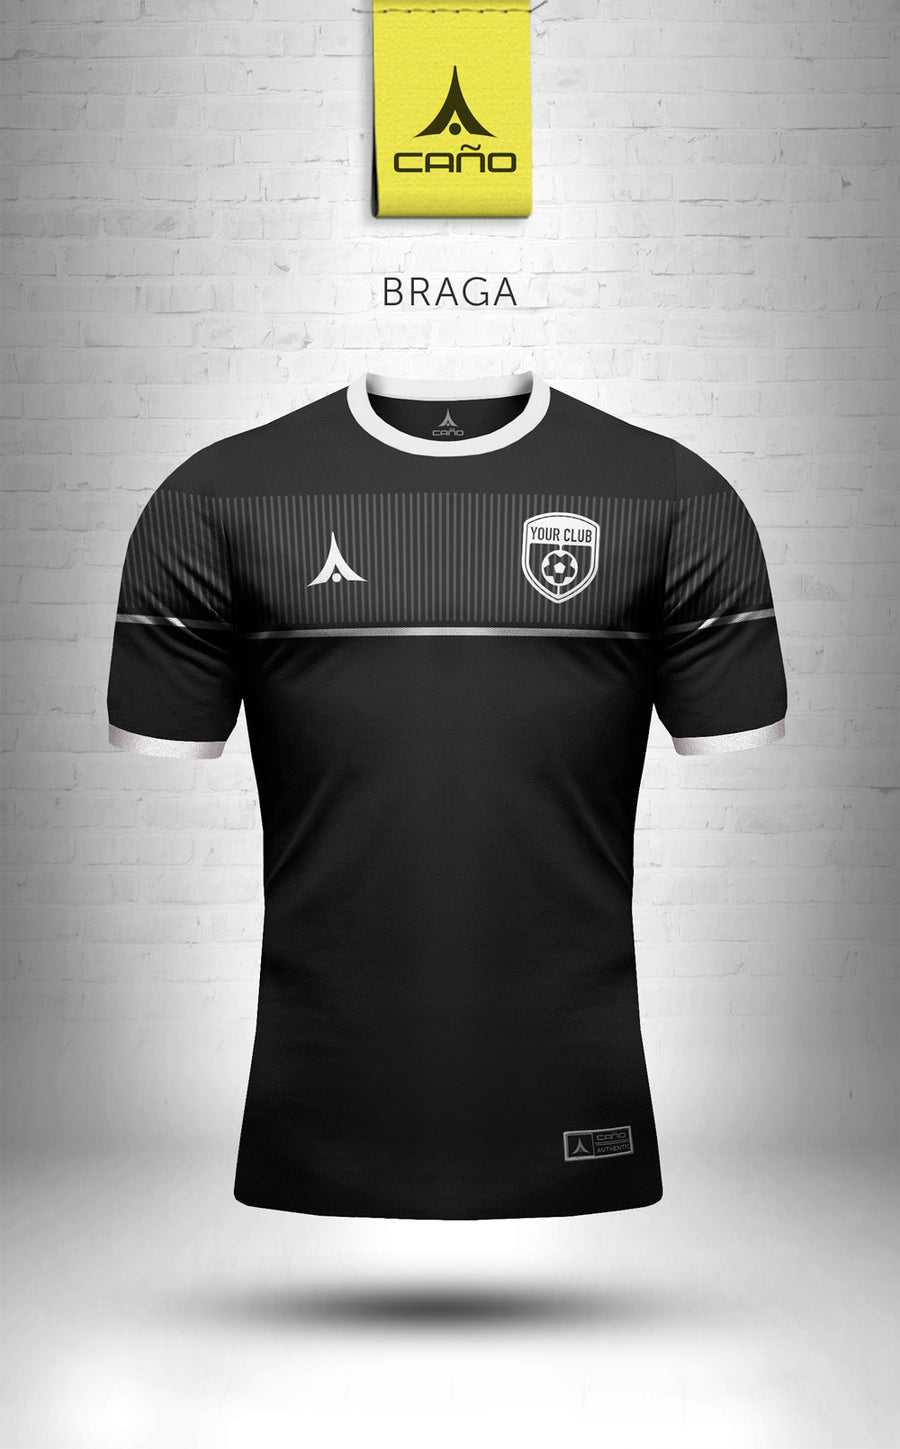 Braga in black/white